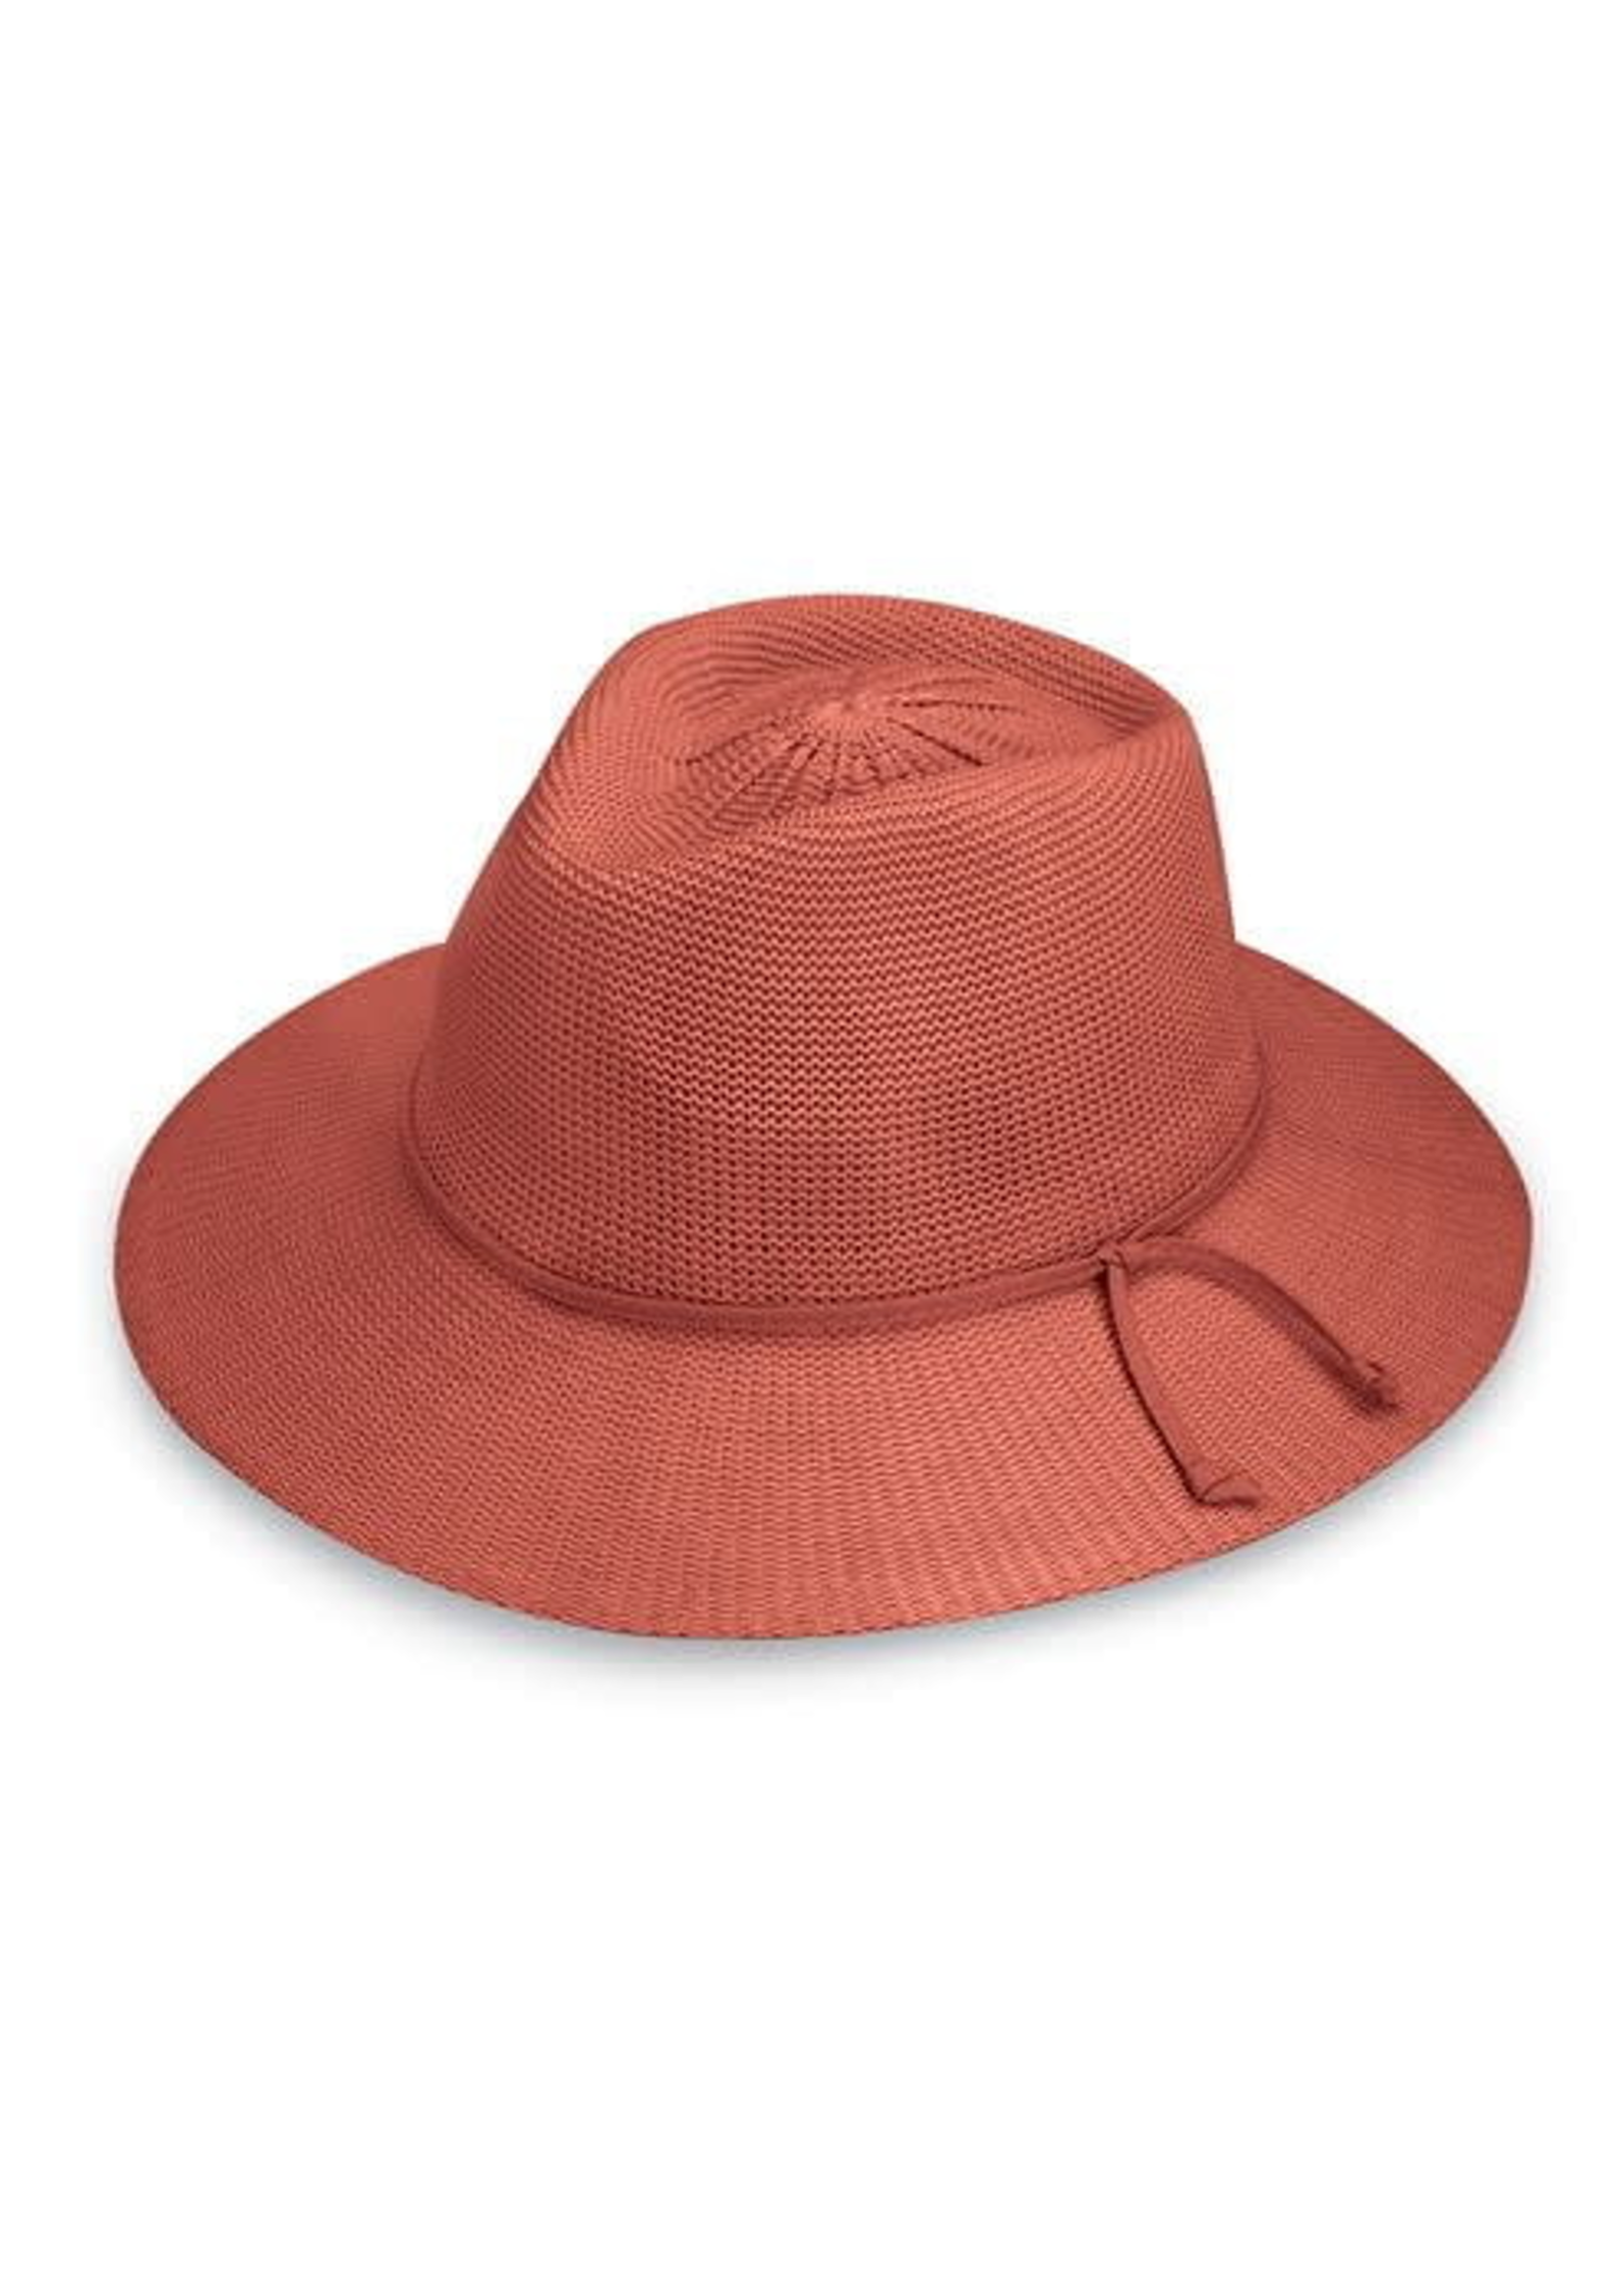 Wallaroo Hats Victoria Fedora